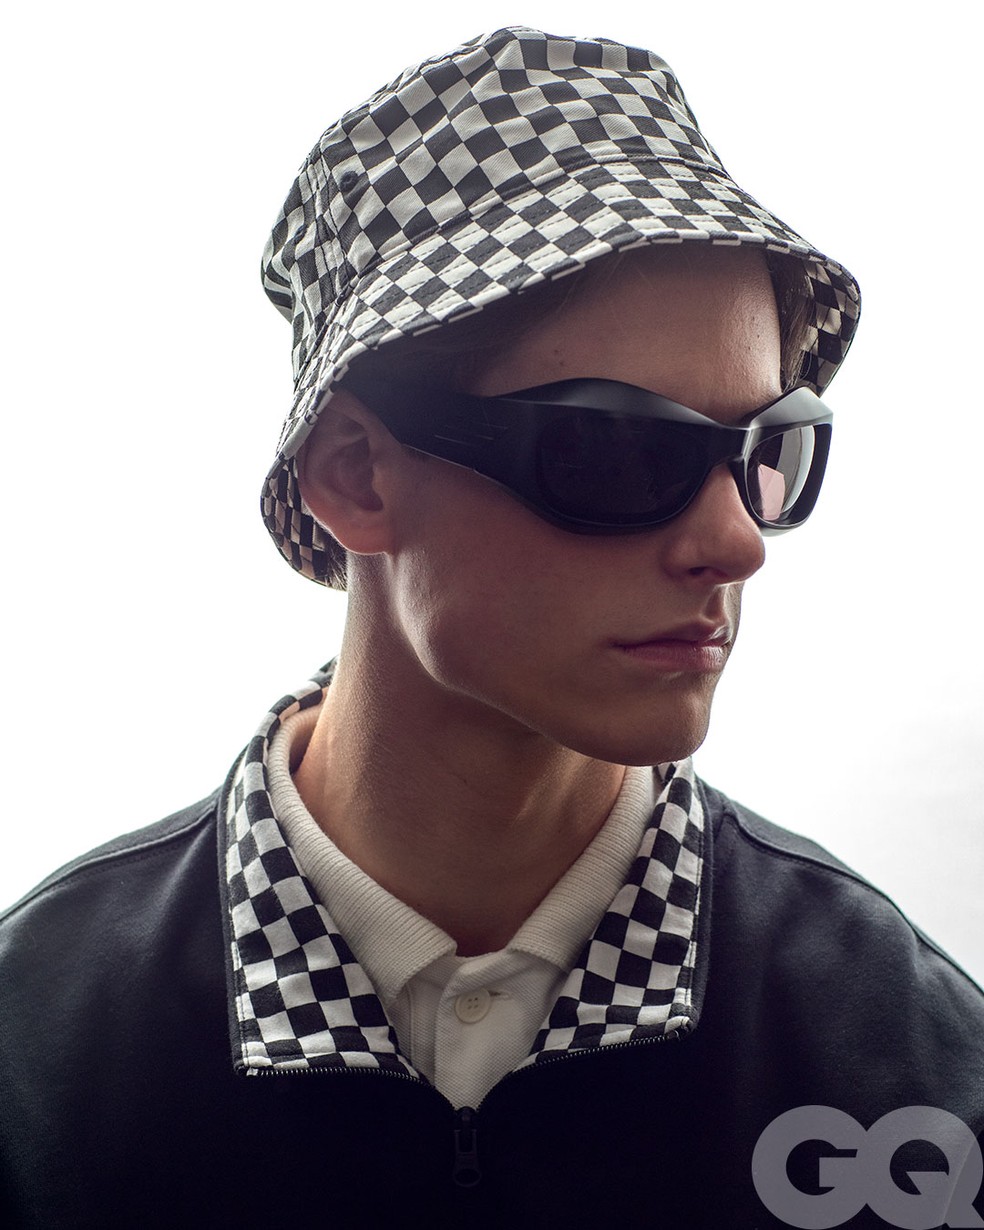 Moda streetwear também aparece nos óculos de sol — Foto: Franco Amendola